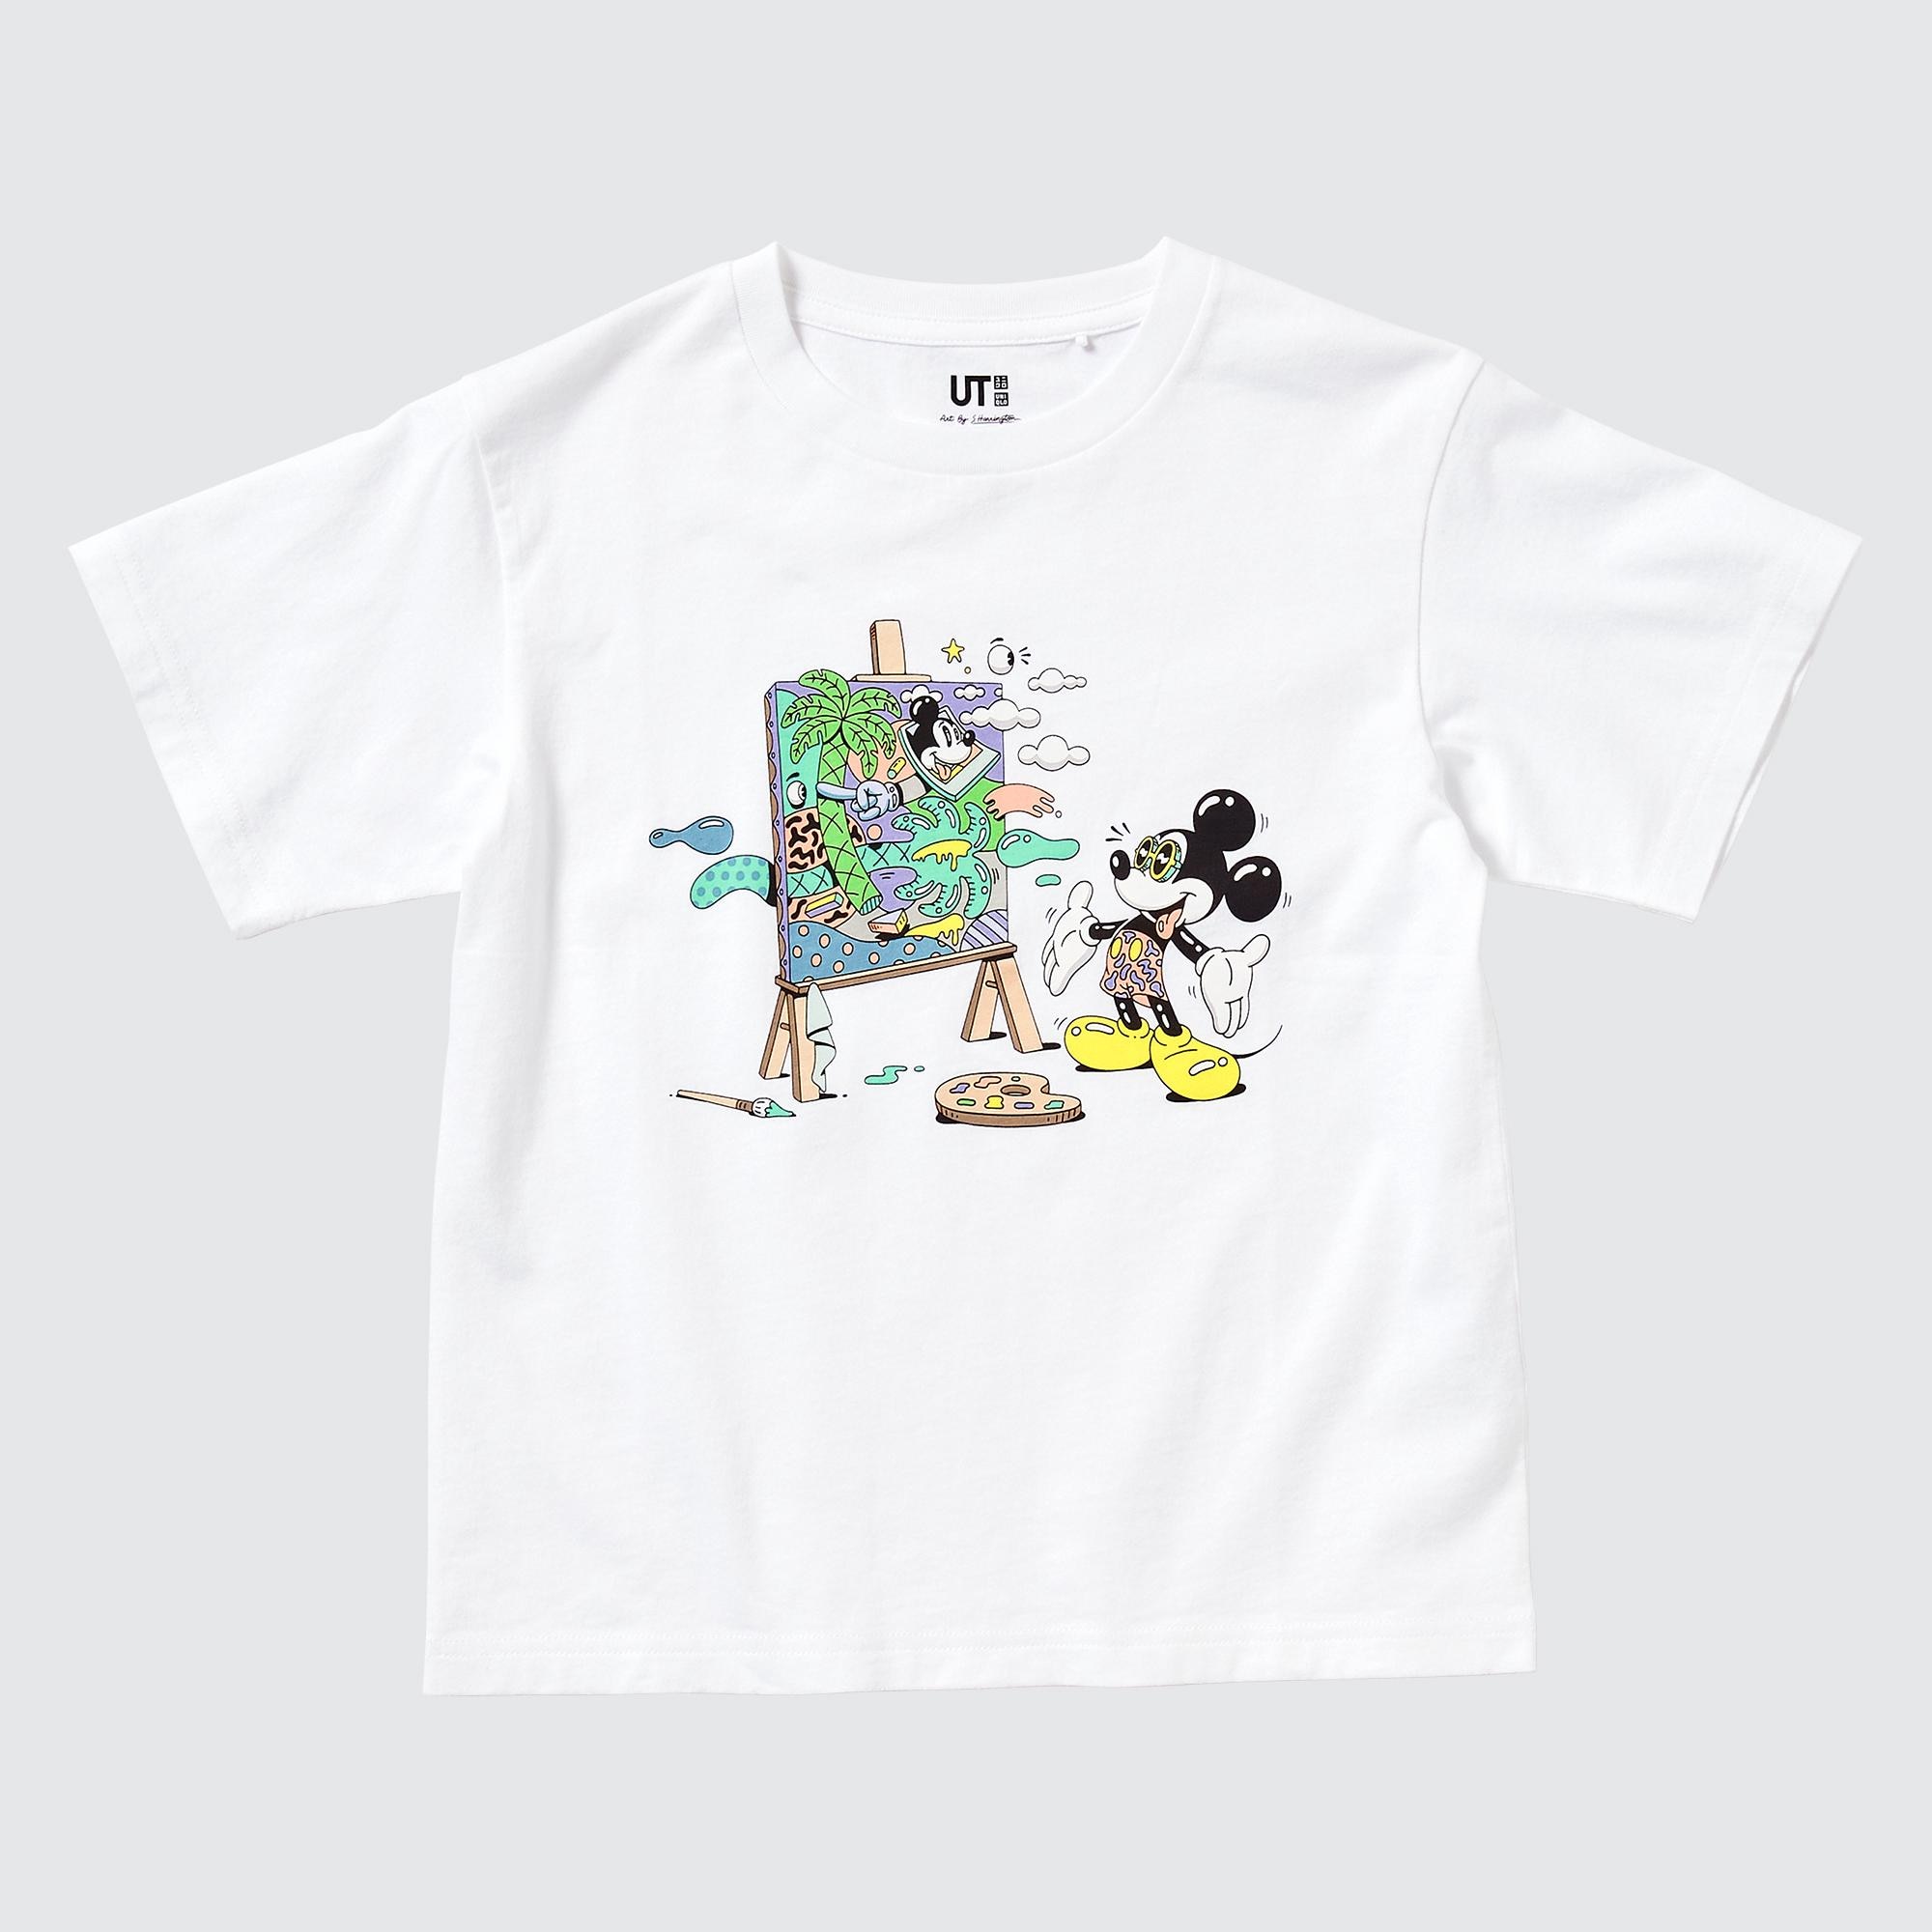 360円 デポー ユニクロ UT ディズニー ミッキー キッズ Tシャツ 半袖 160cm